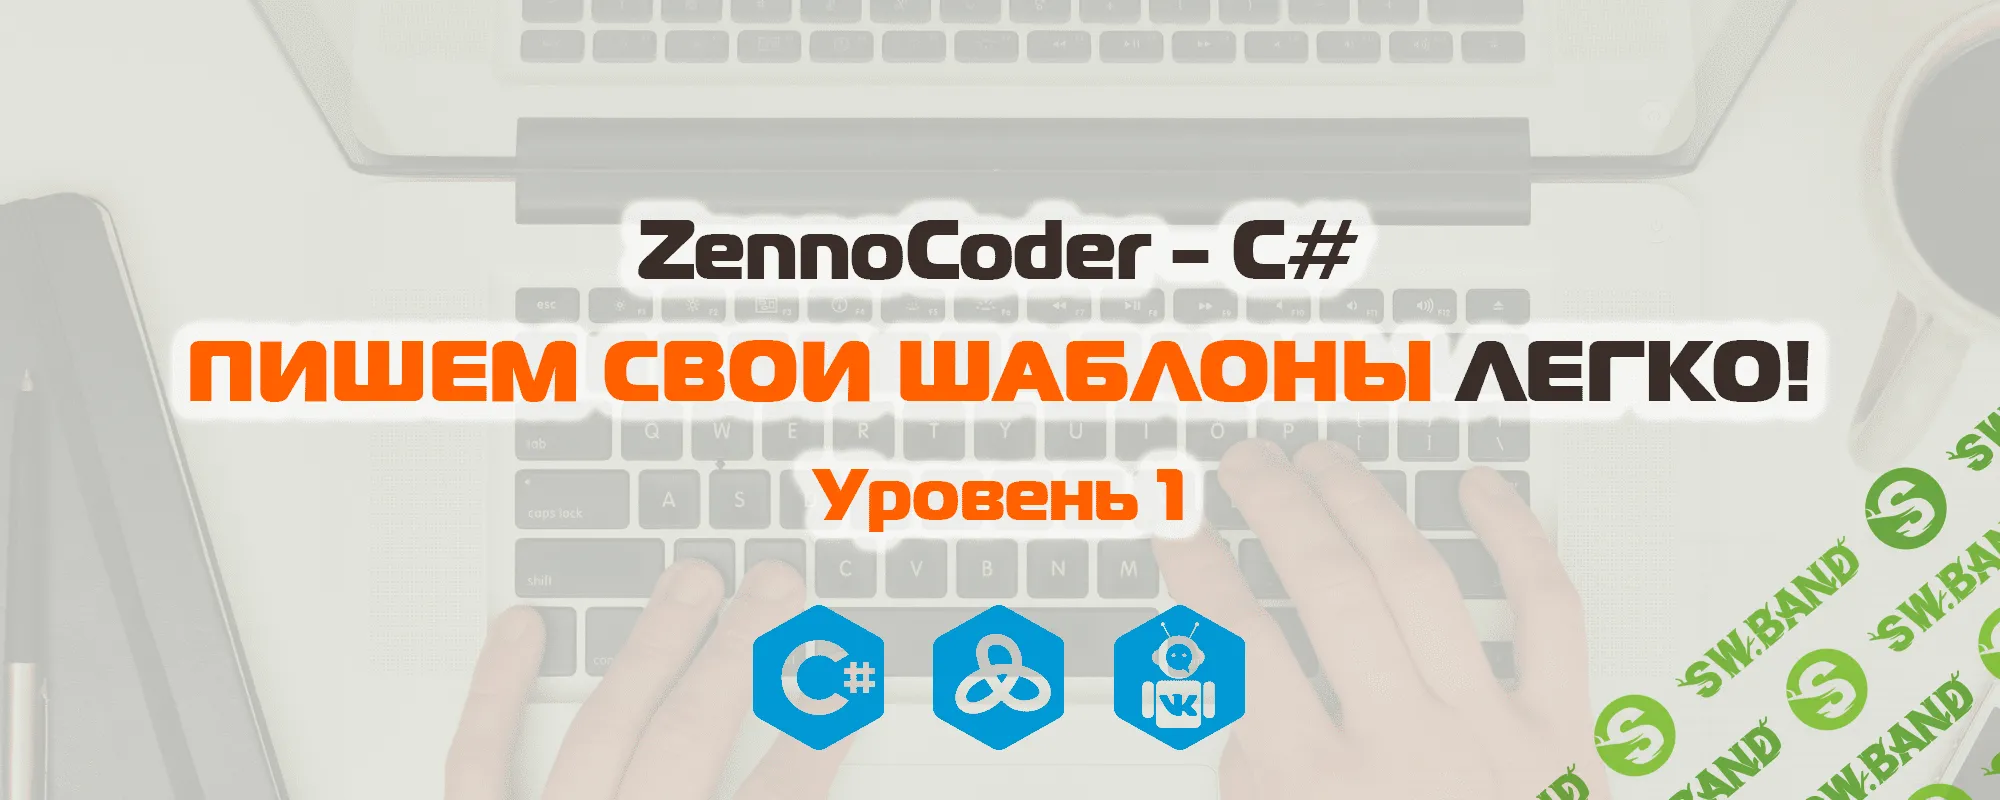 ZennoCoder - C# Пишем свои шаблоны легко. Уровень 1 (2018)